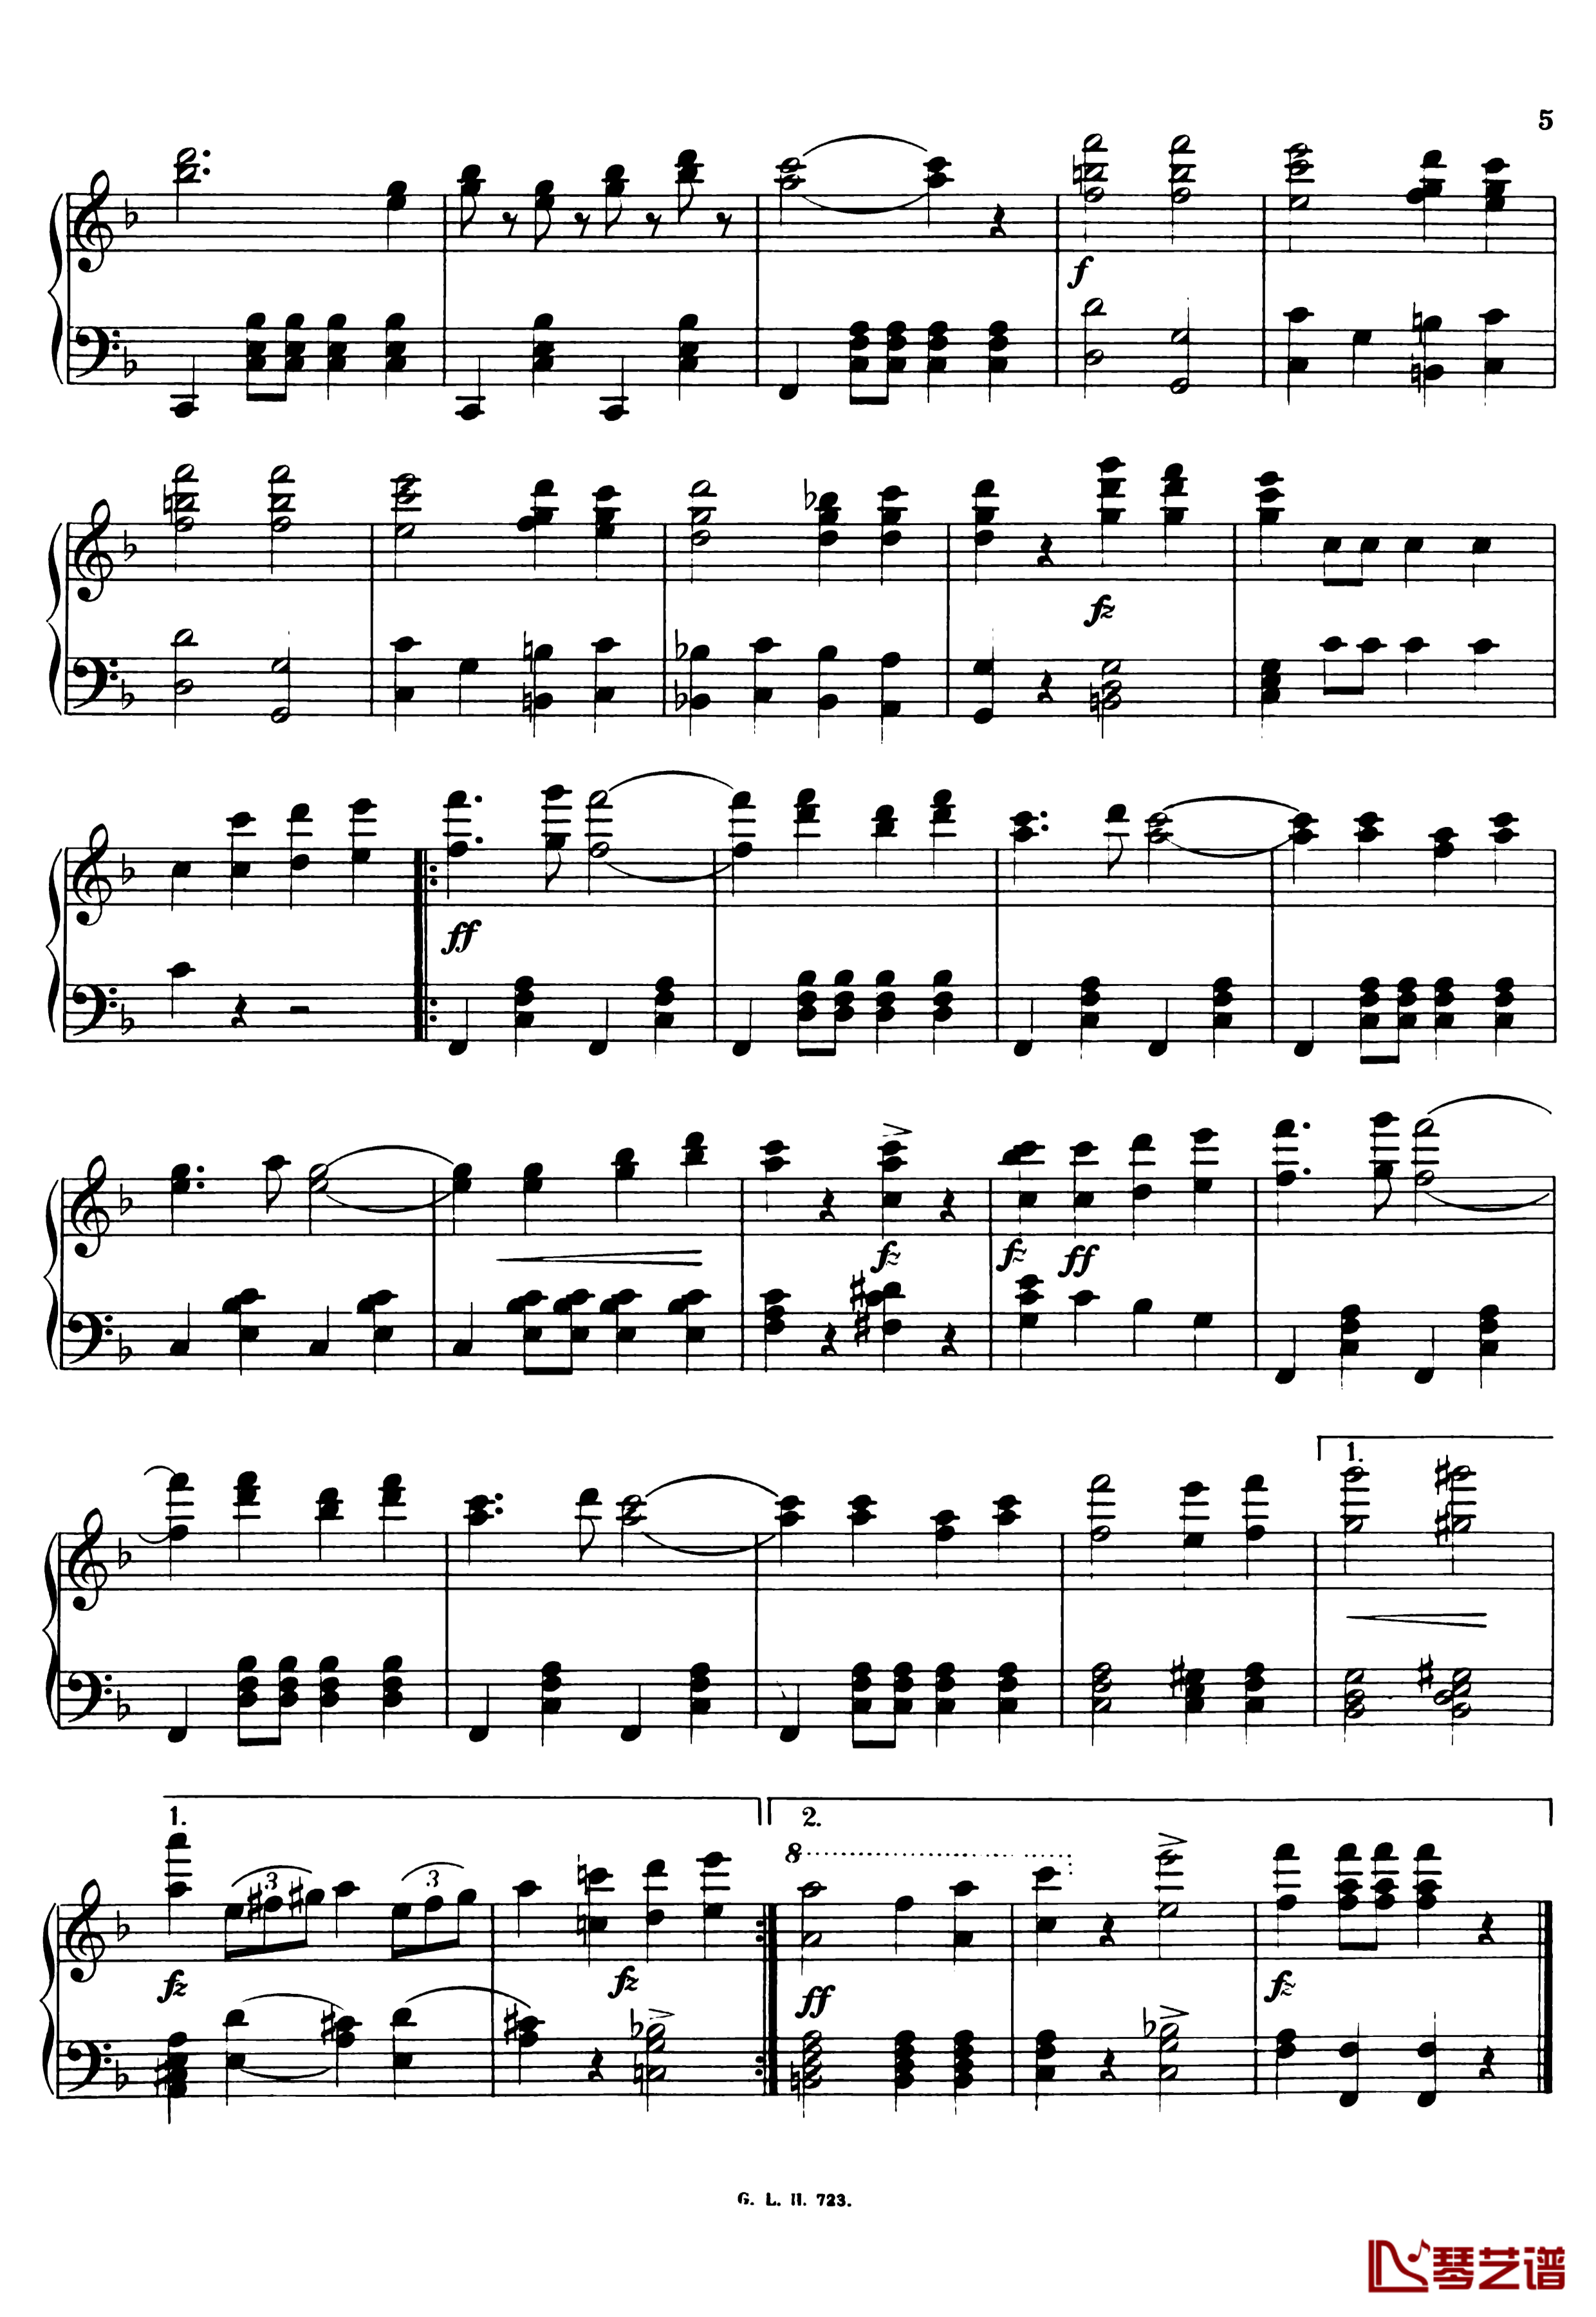 祝您健康进行曲  Op.456钢琴谱-小约翰施特劳斯3